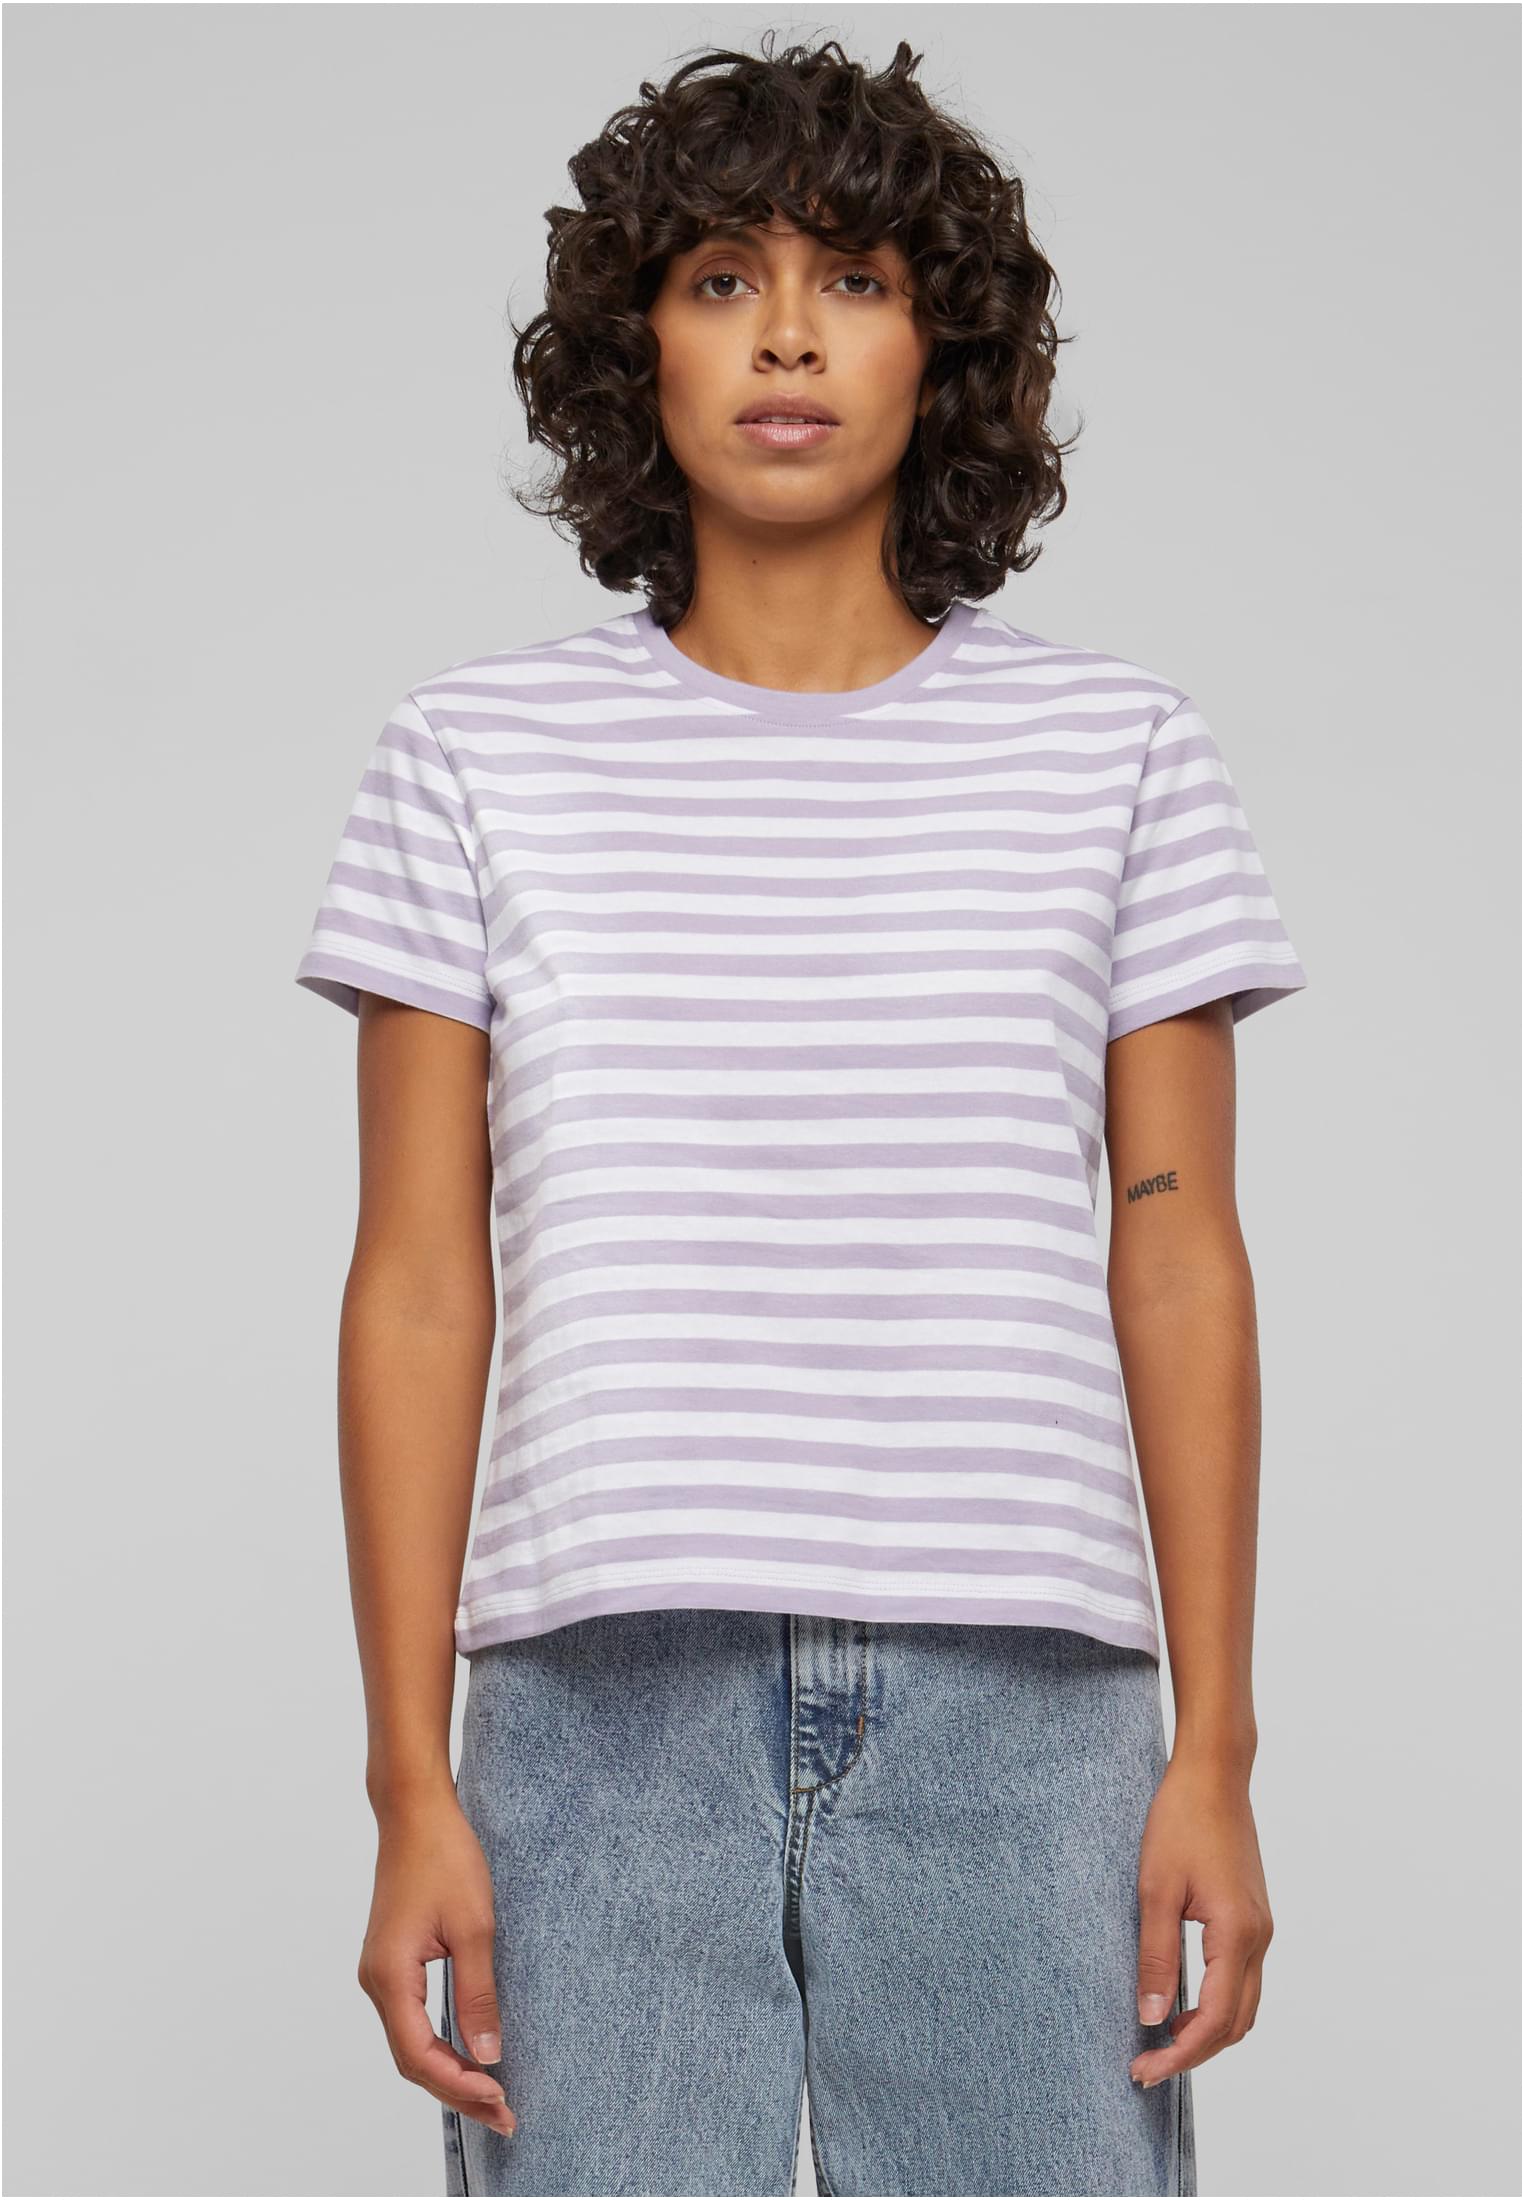 Dámské základní pruhované tričko bílé/fialové